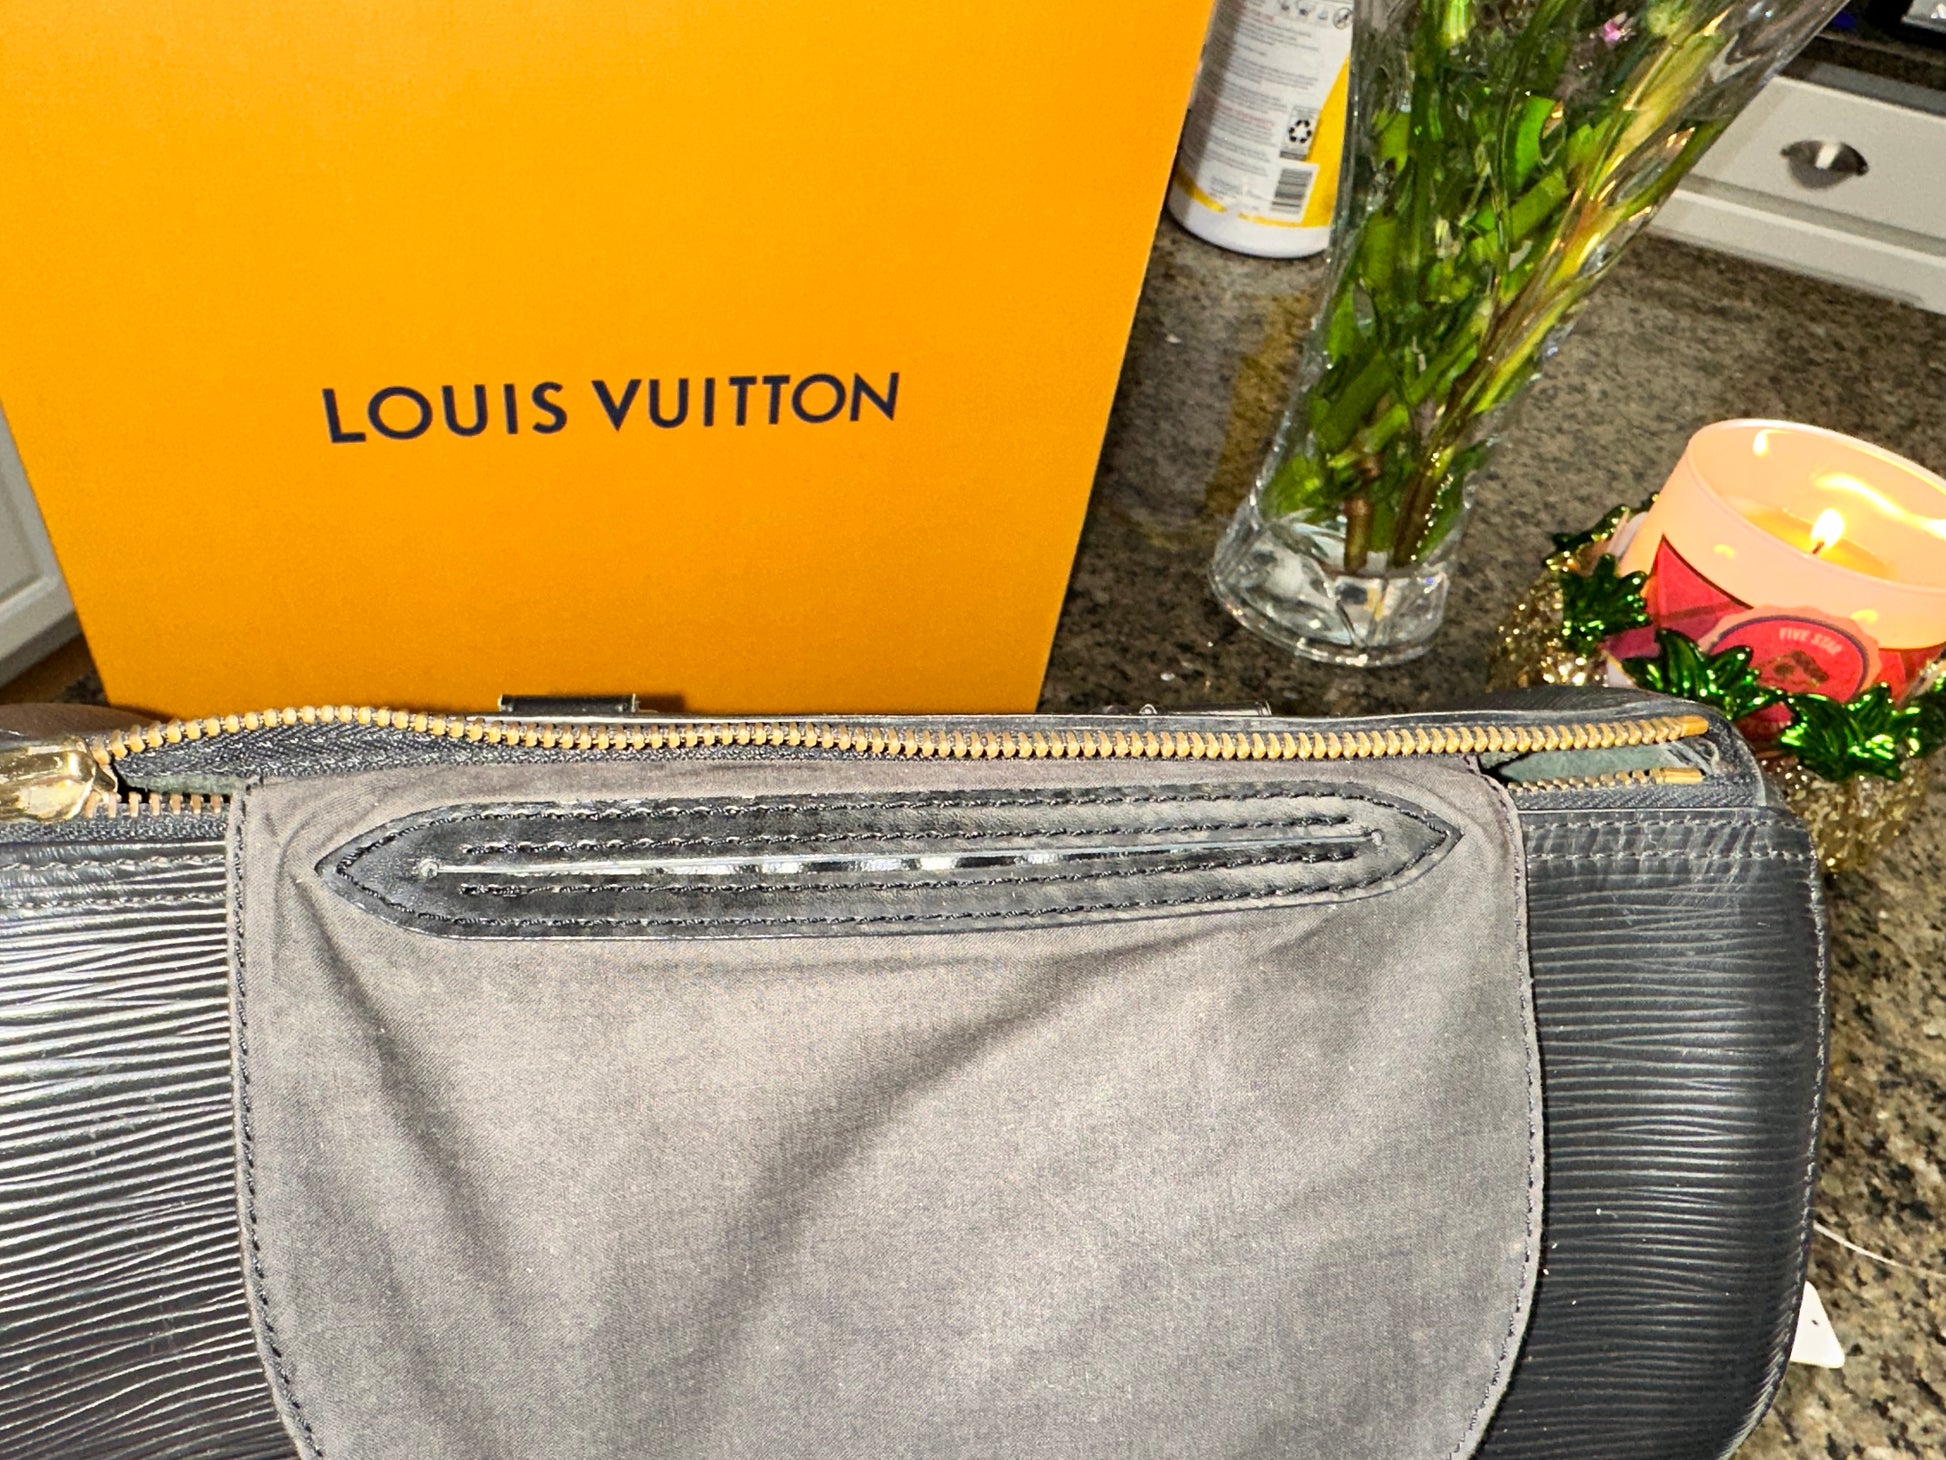 Vintage Louis Vuitton Speedy 25 Yellow Epi Leather Bag SP0956